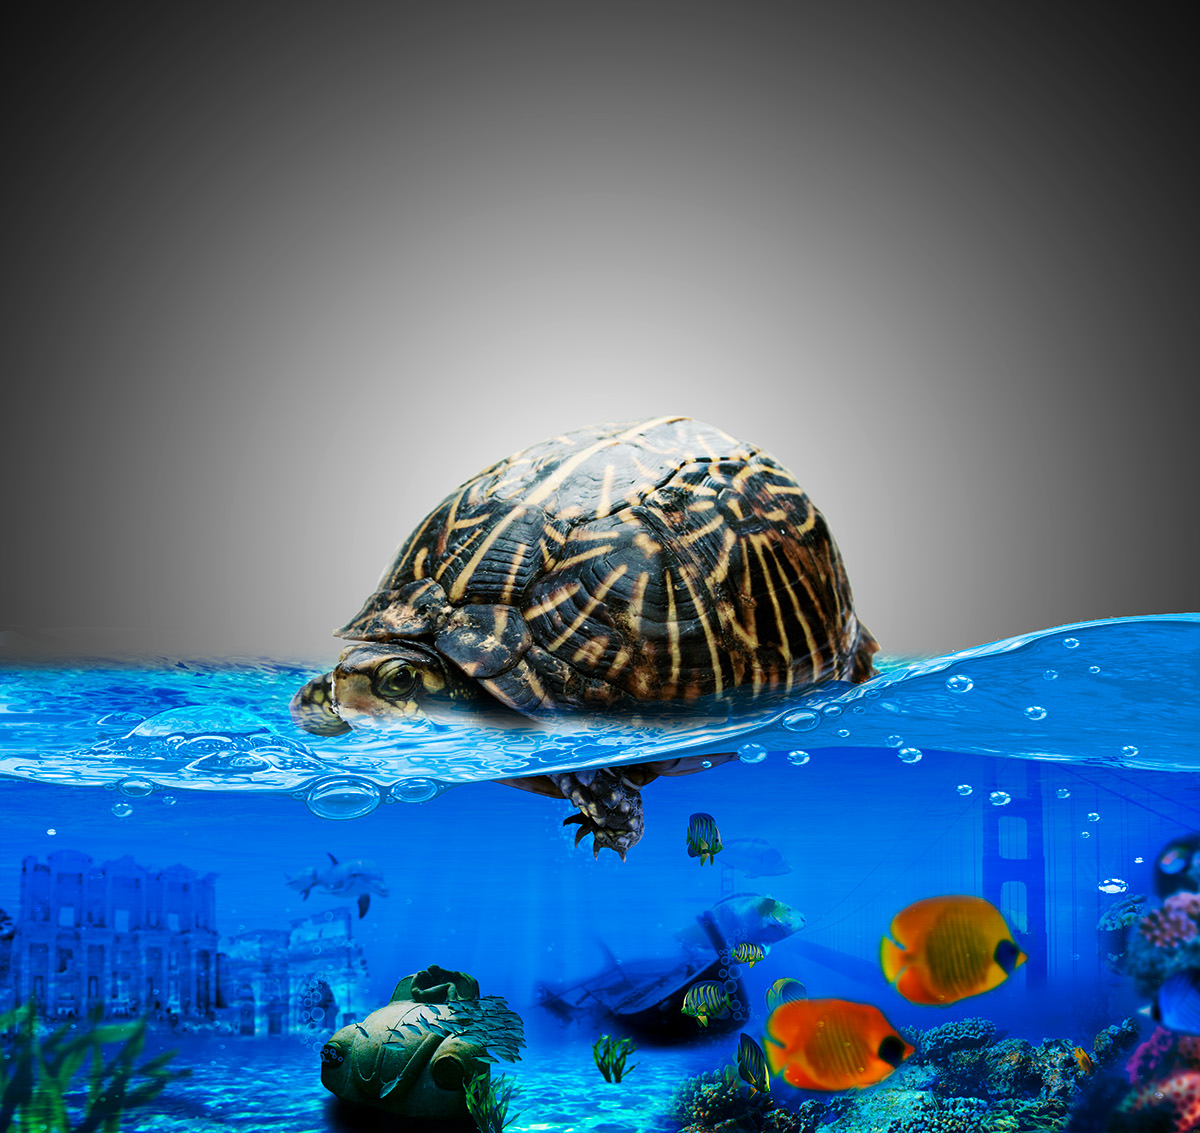 Turtle Manipulation Turtle manipulation ŞÜKRÜ ÇERÇİ  PS see deniz şehir manuplasyon kablumbağa tarih su altı hazine